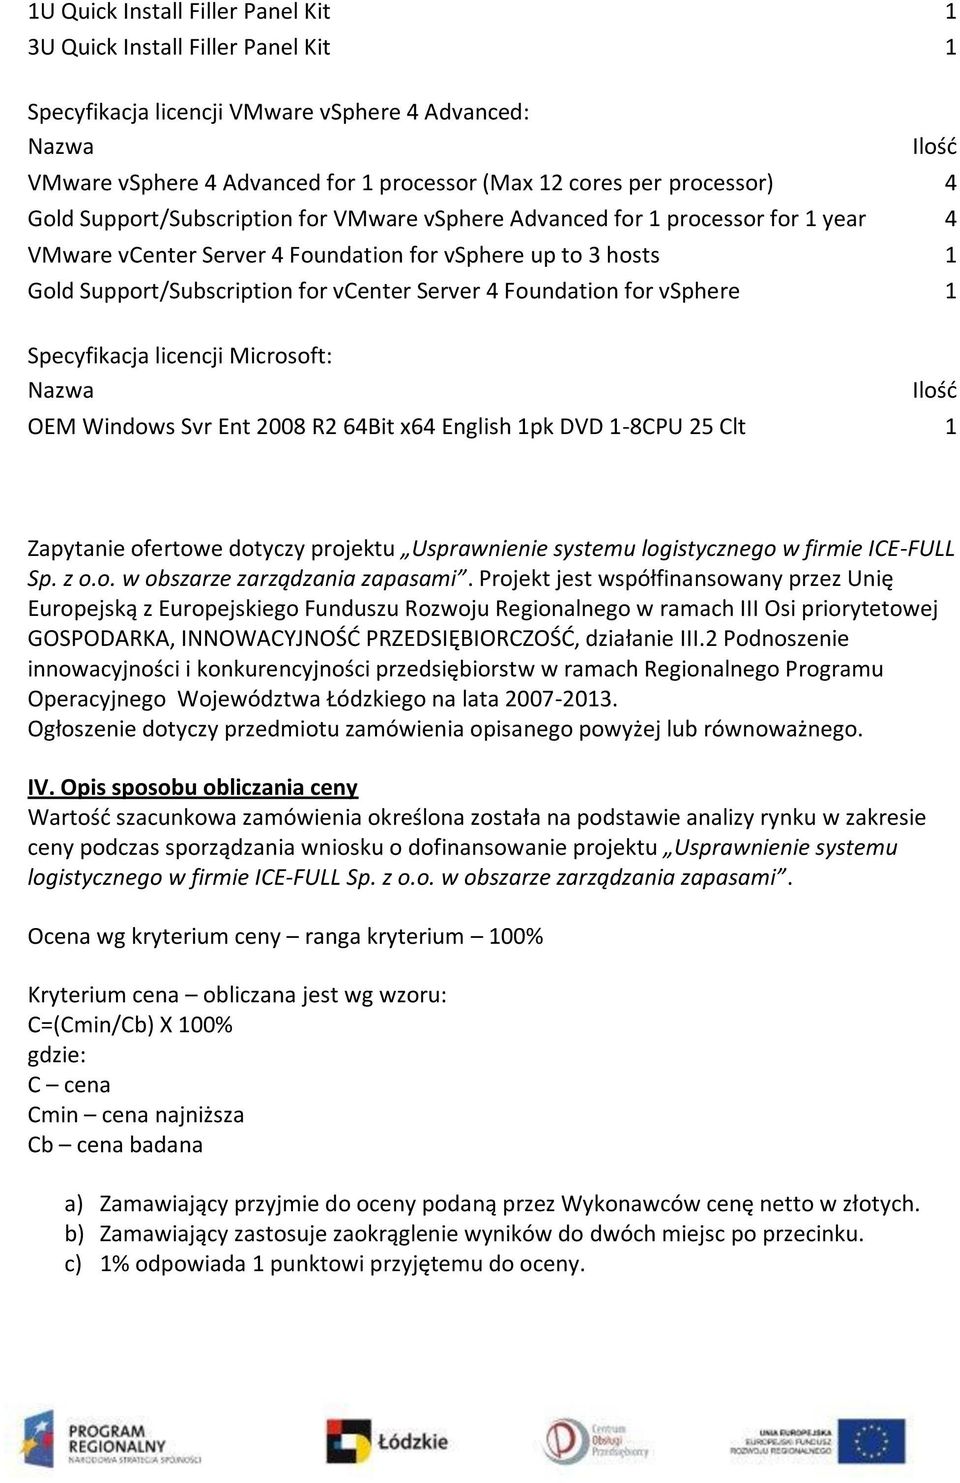 Foundation for vsphere 1 Specyfikacja licencji Microsoft: Nazwa OEM Windows Svr Ent 2008 R2 64Bit x64 English 1pk DVD 1-8CPU 25 Clt 1 Zapytanie ofertowe dotyczy projektu Usprawnienie systemu